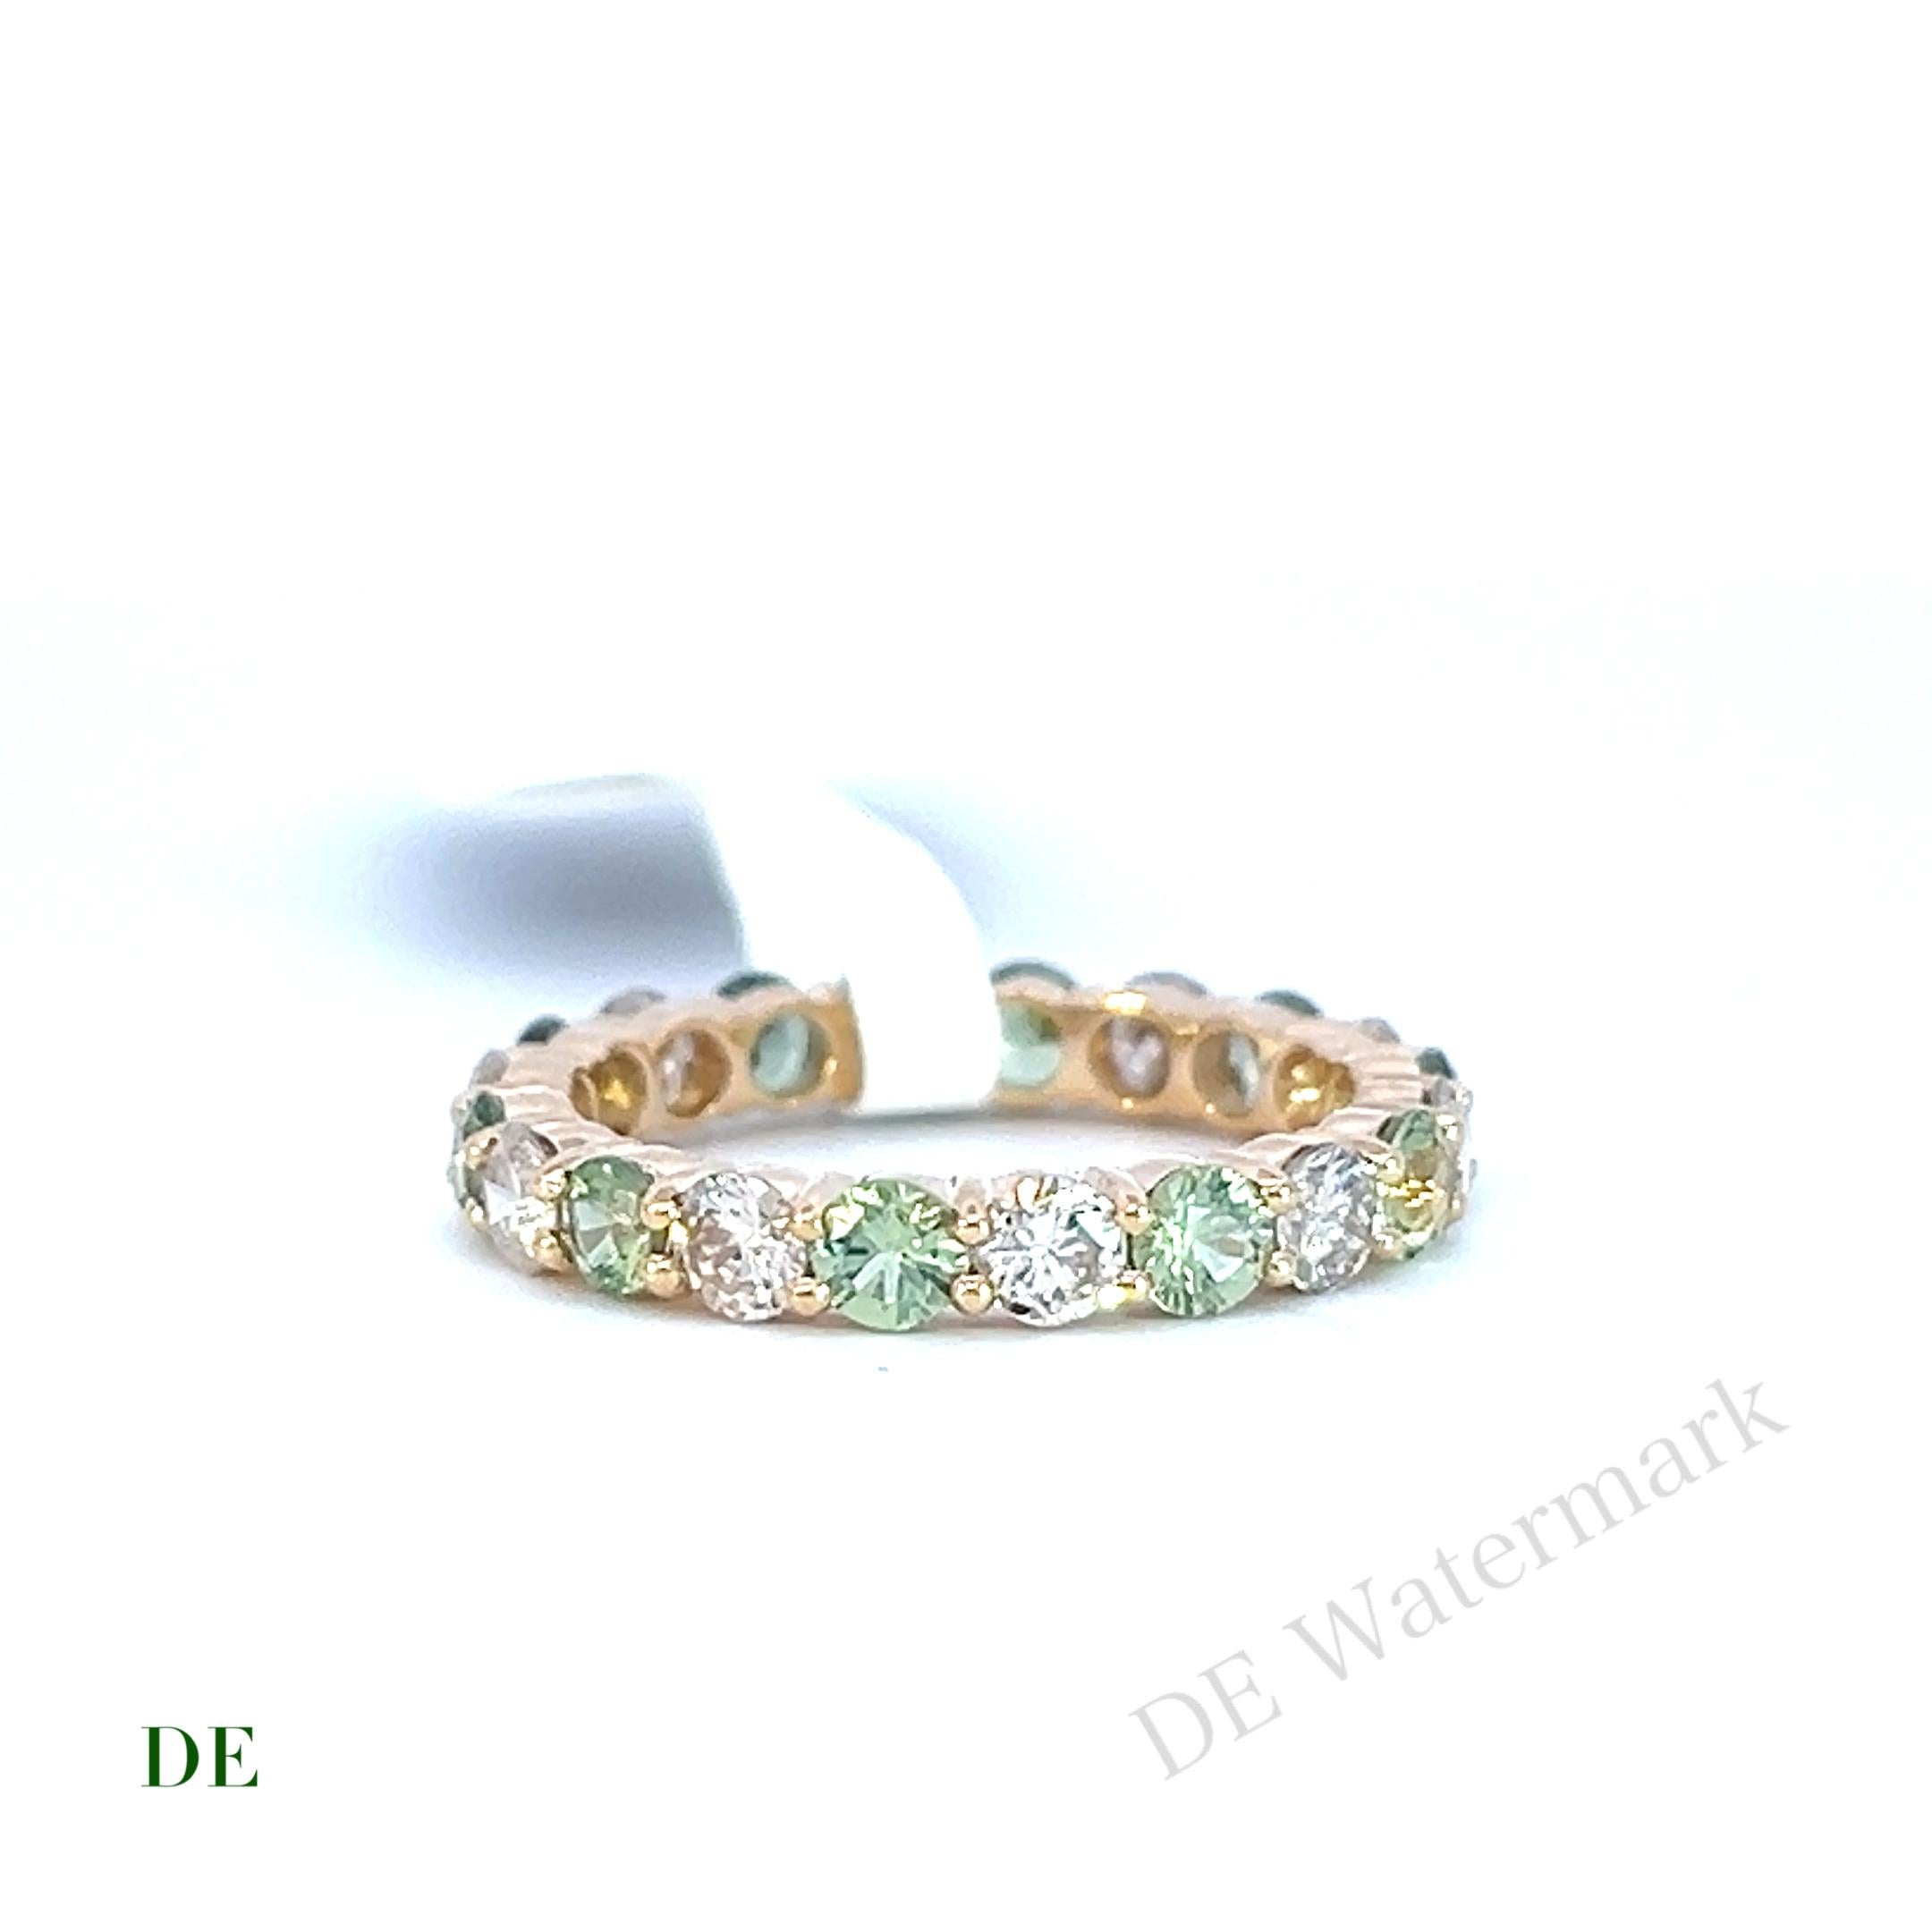 Women's or Men's Classic 14k White 1.09 crt Diamond 1.35 Crt Green Sapphire Eternity Band Ring For Sale